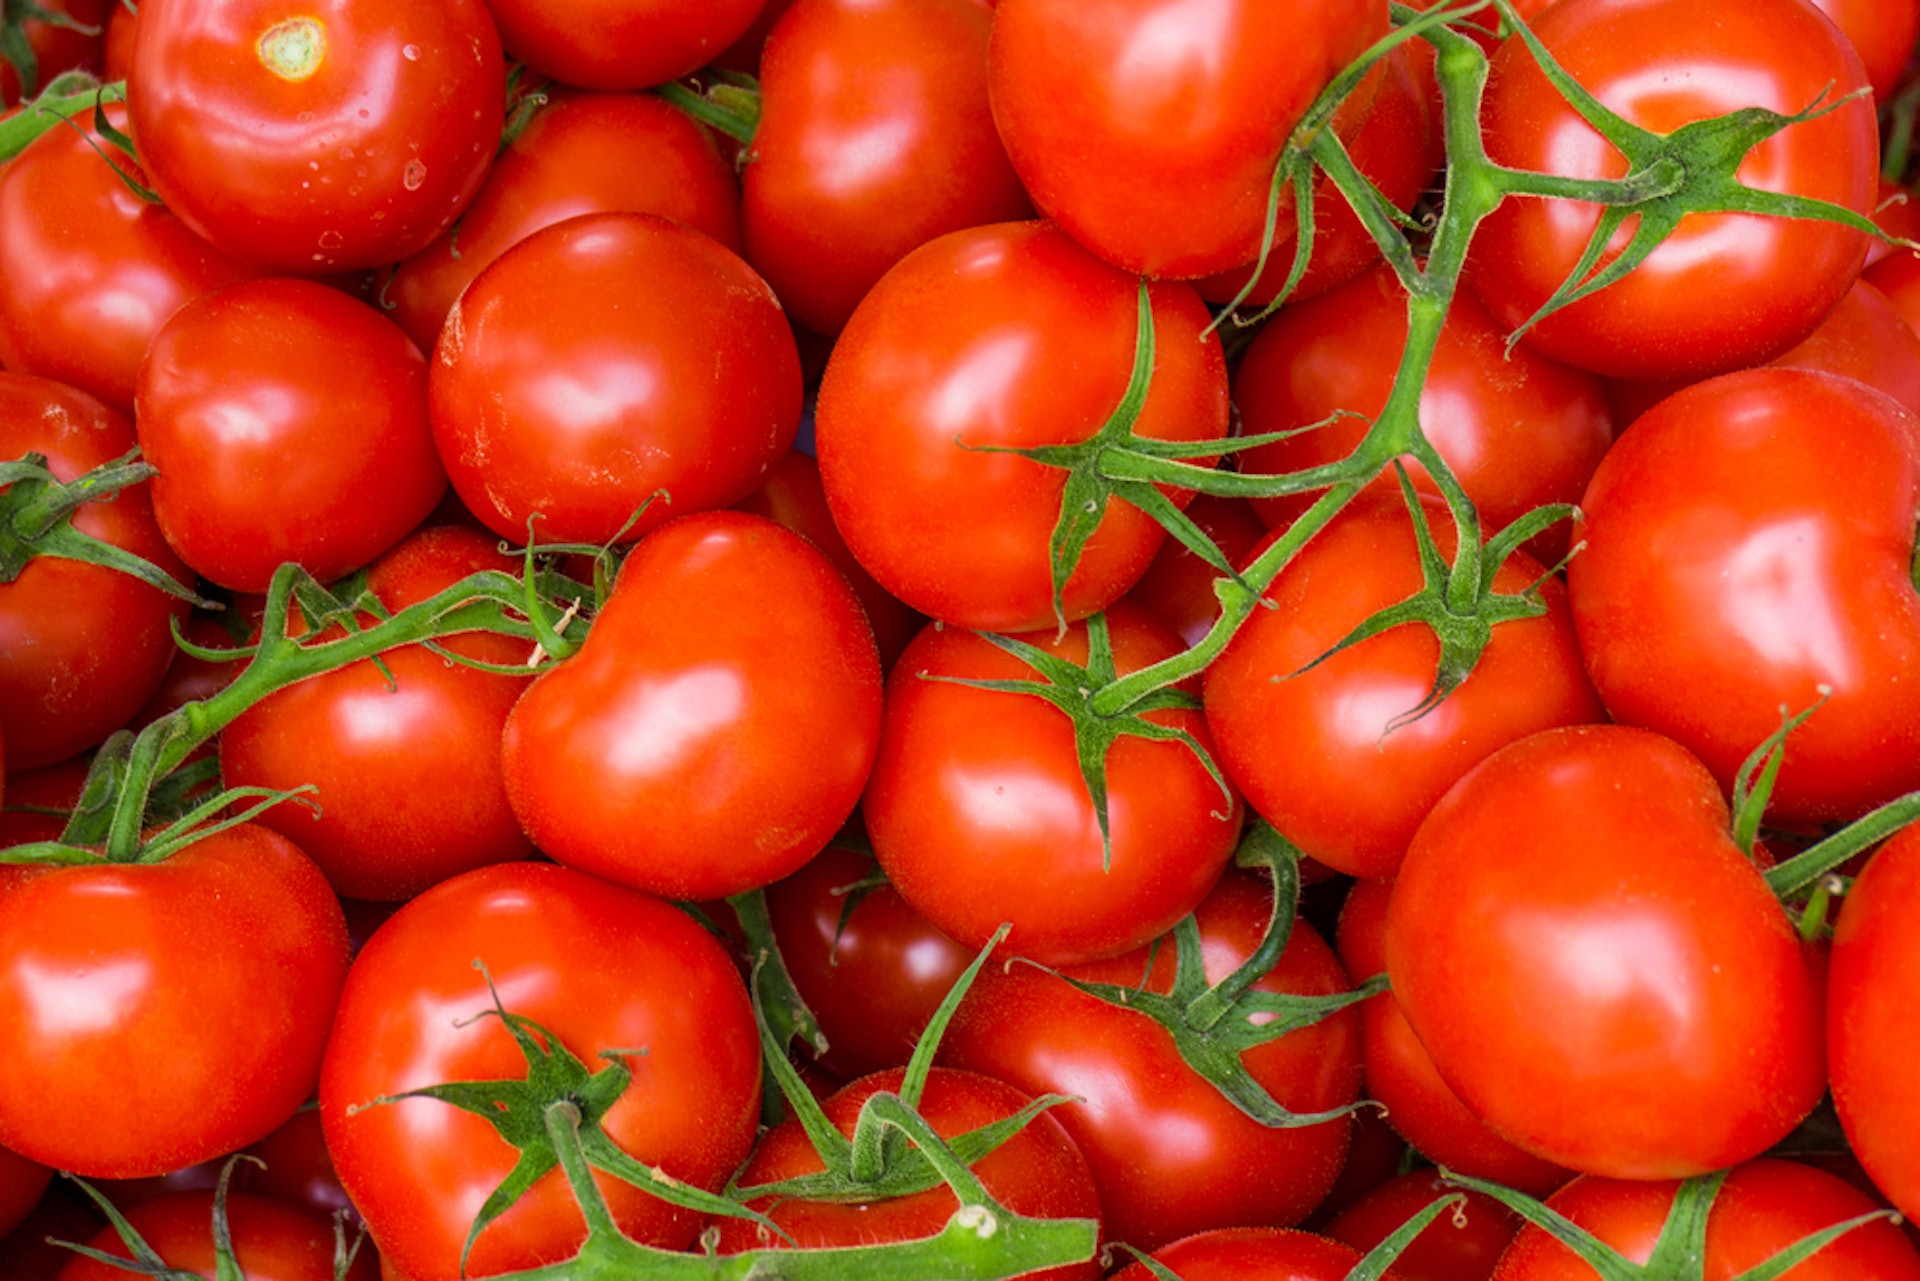 蕃茄除了含有豐富的維他命Ｃ有助抗氧化之外，它含有的茄紅素攻能有助降低體內的血糖水平